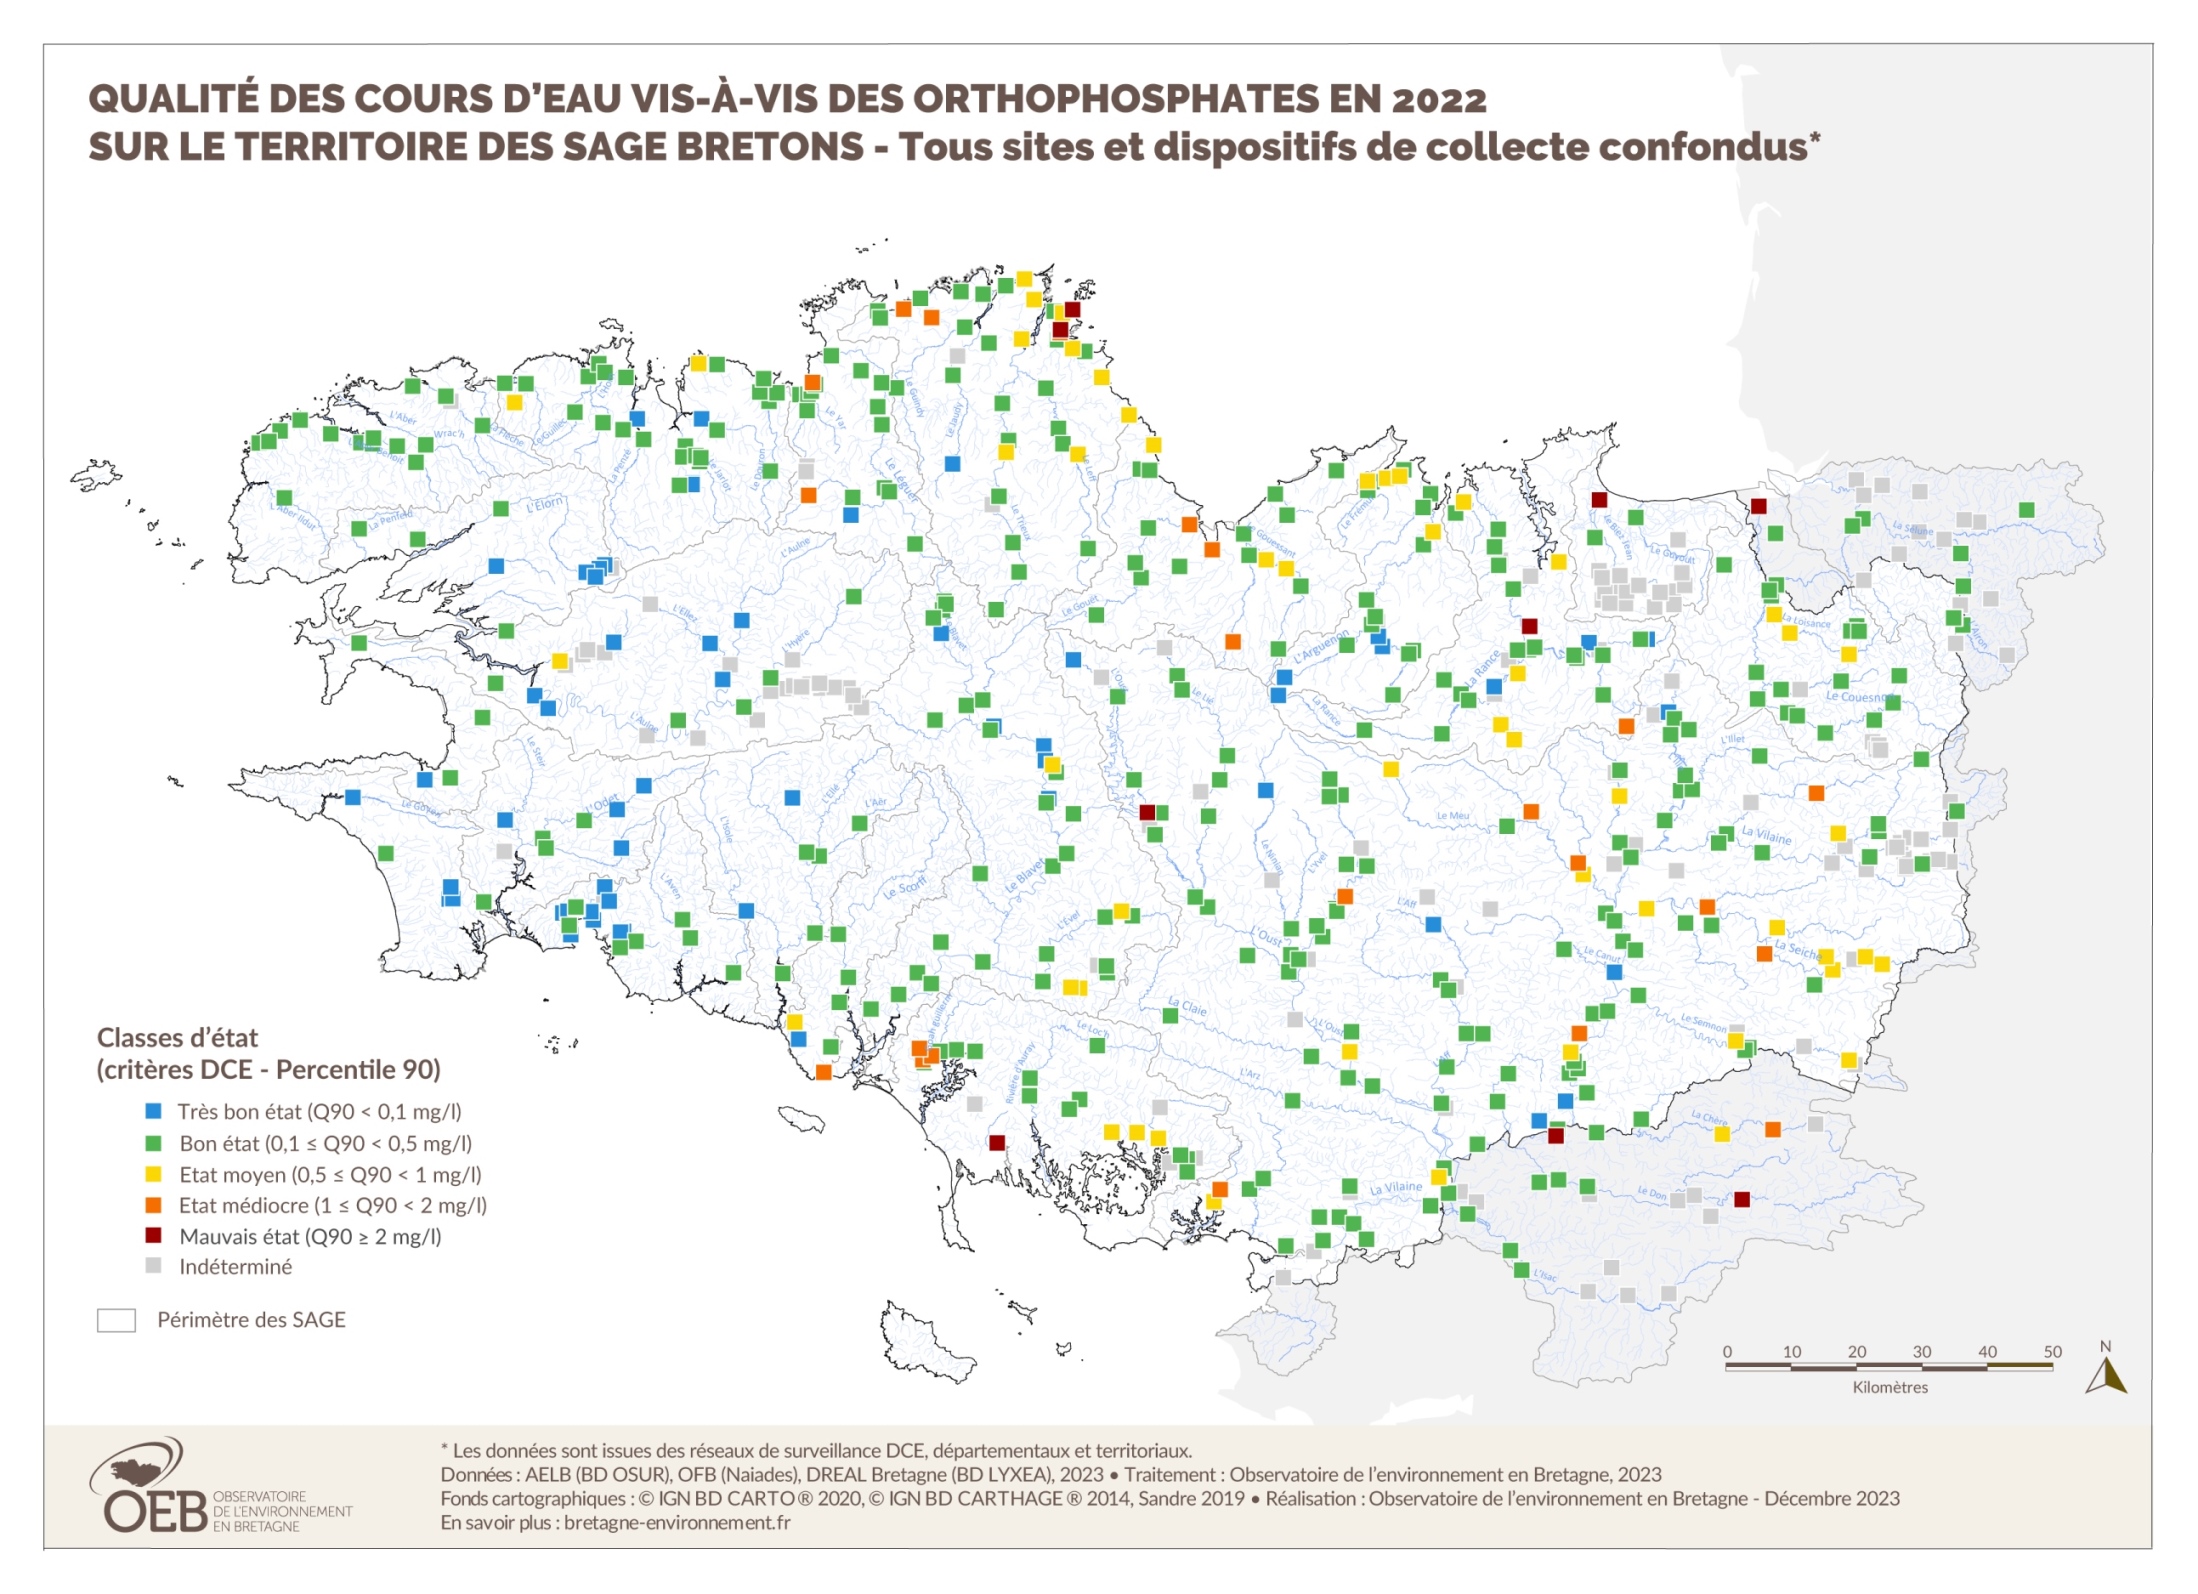  Qualité des cours d'eau bretons vis-à-vis des orthophosphates en 2022